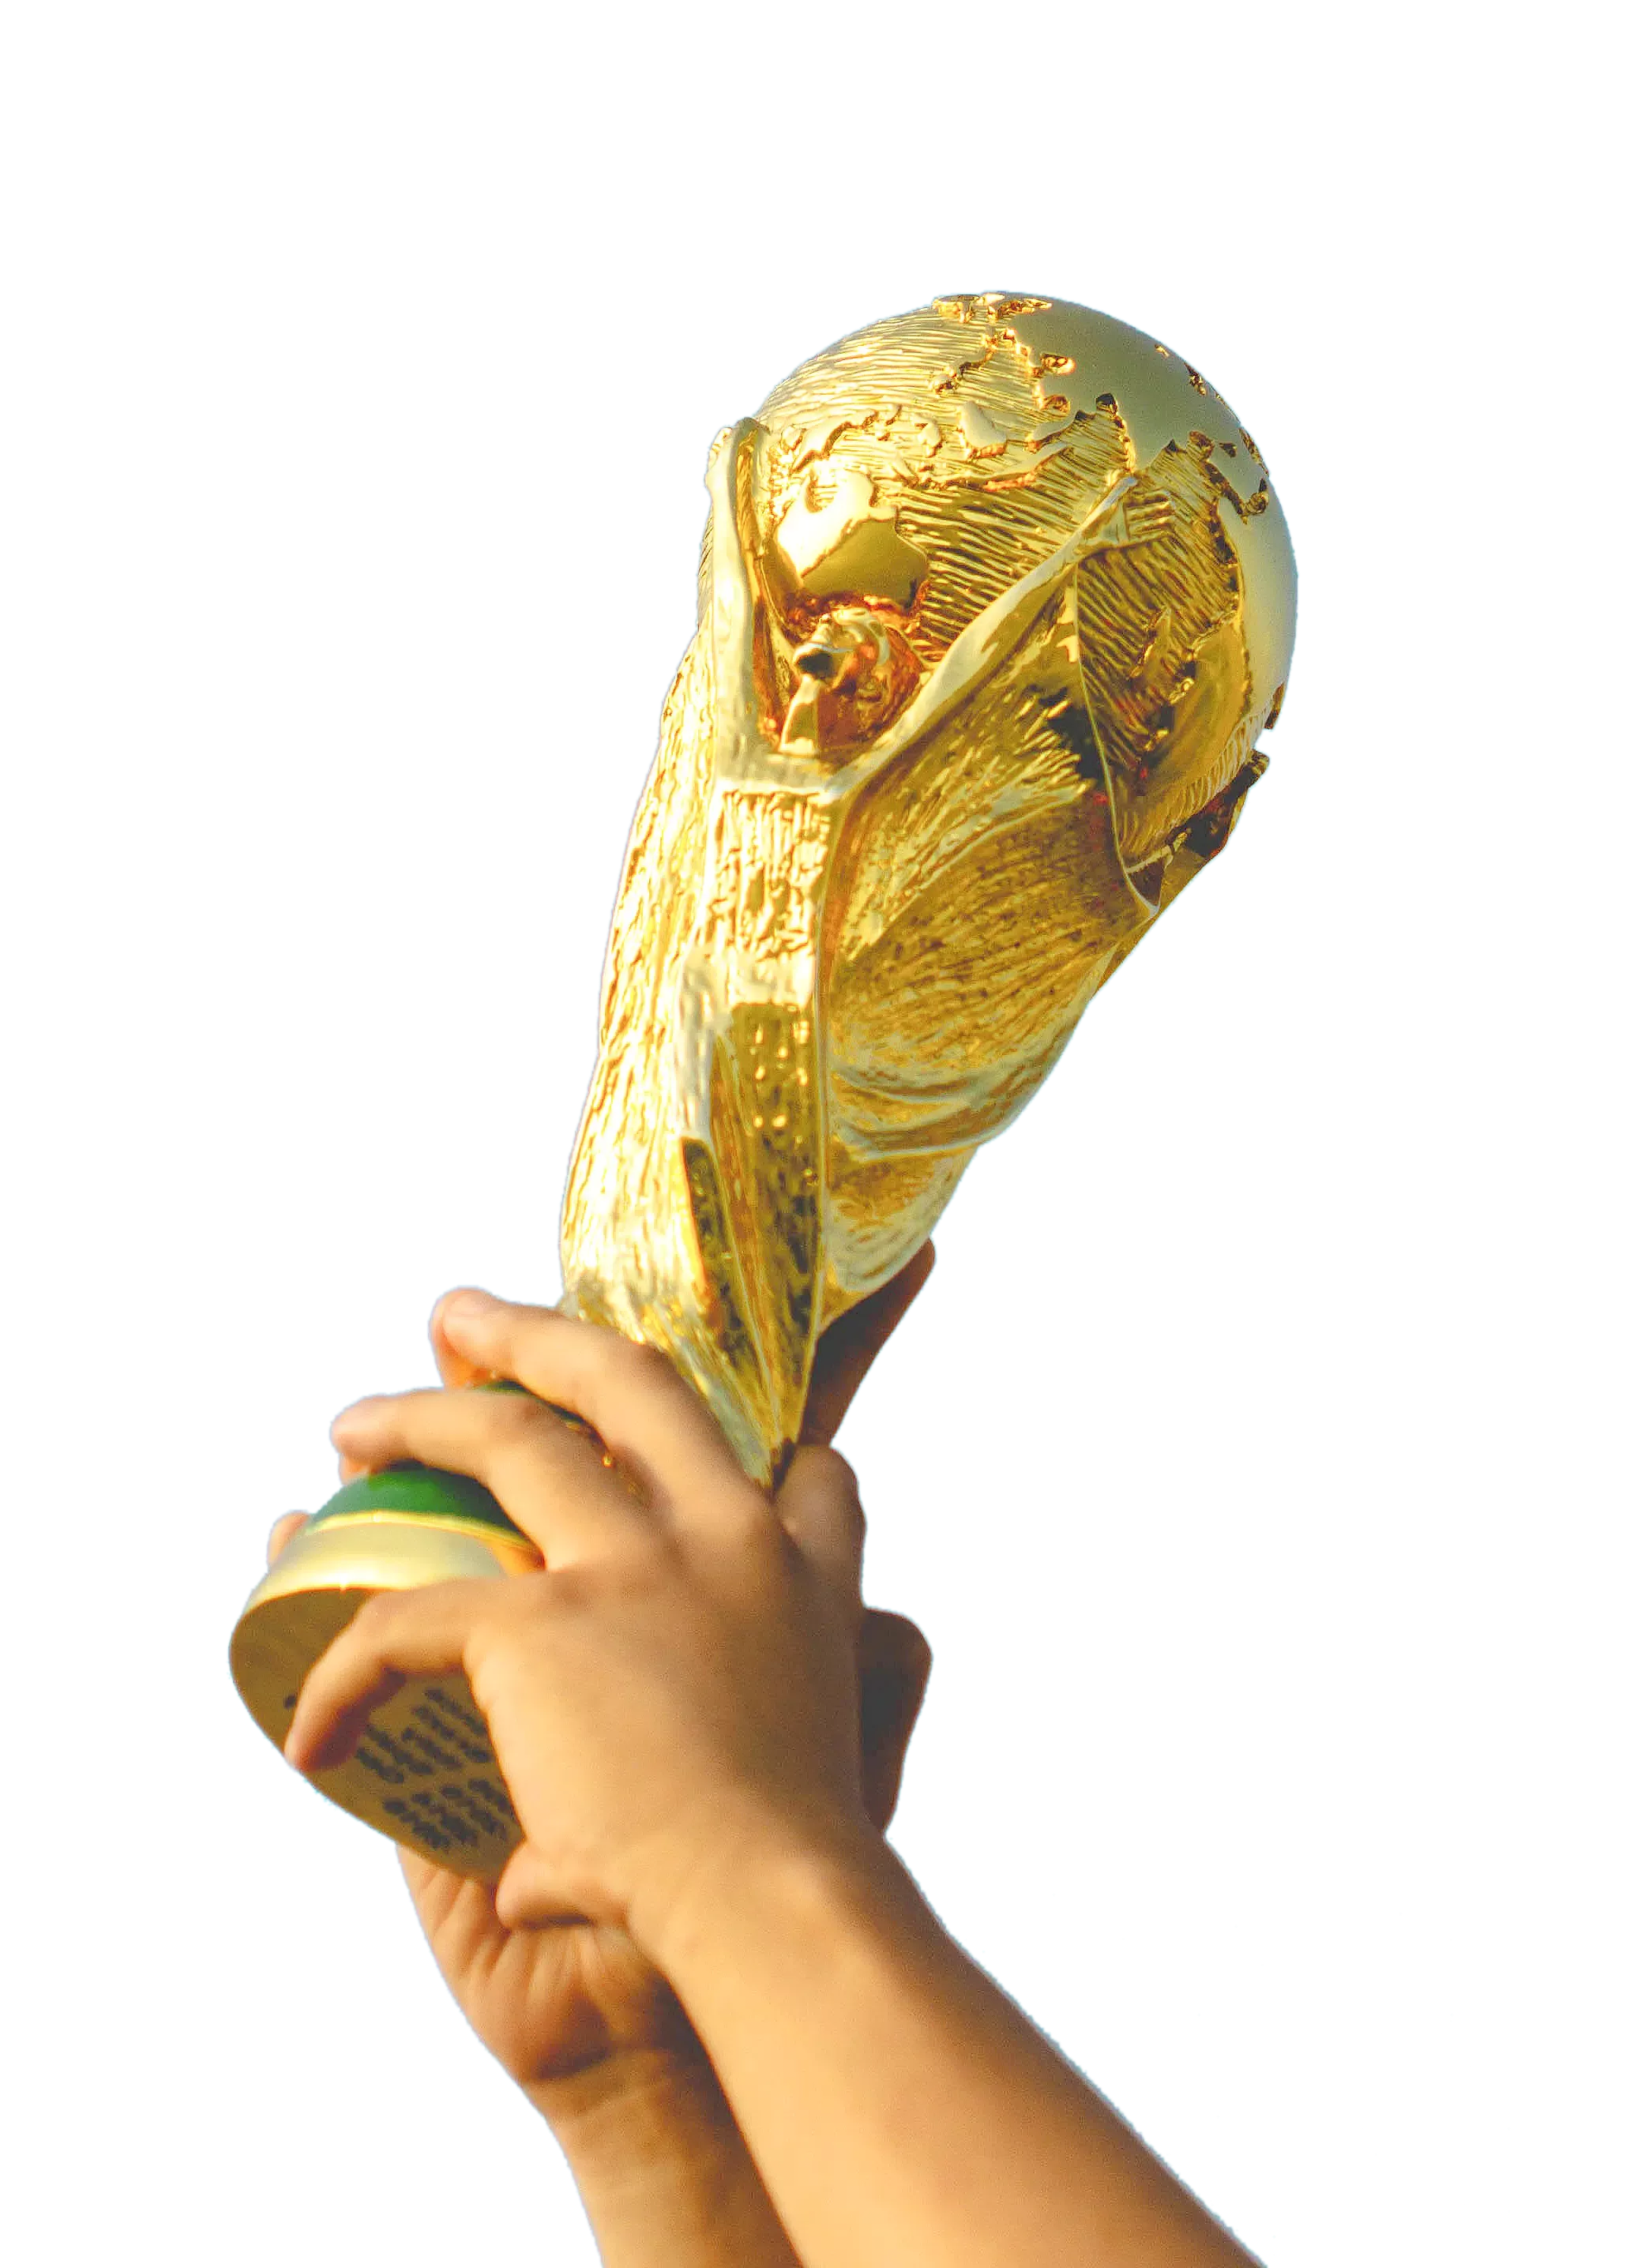 qatar football world cup 2022 trophy